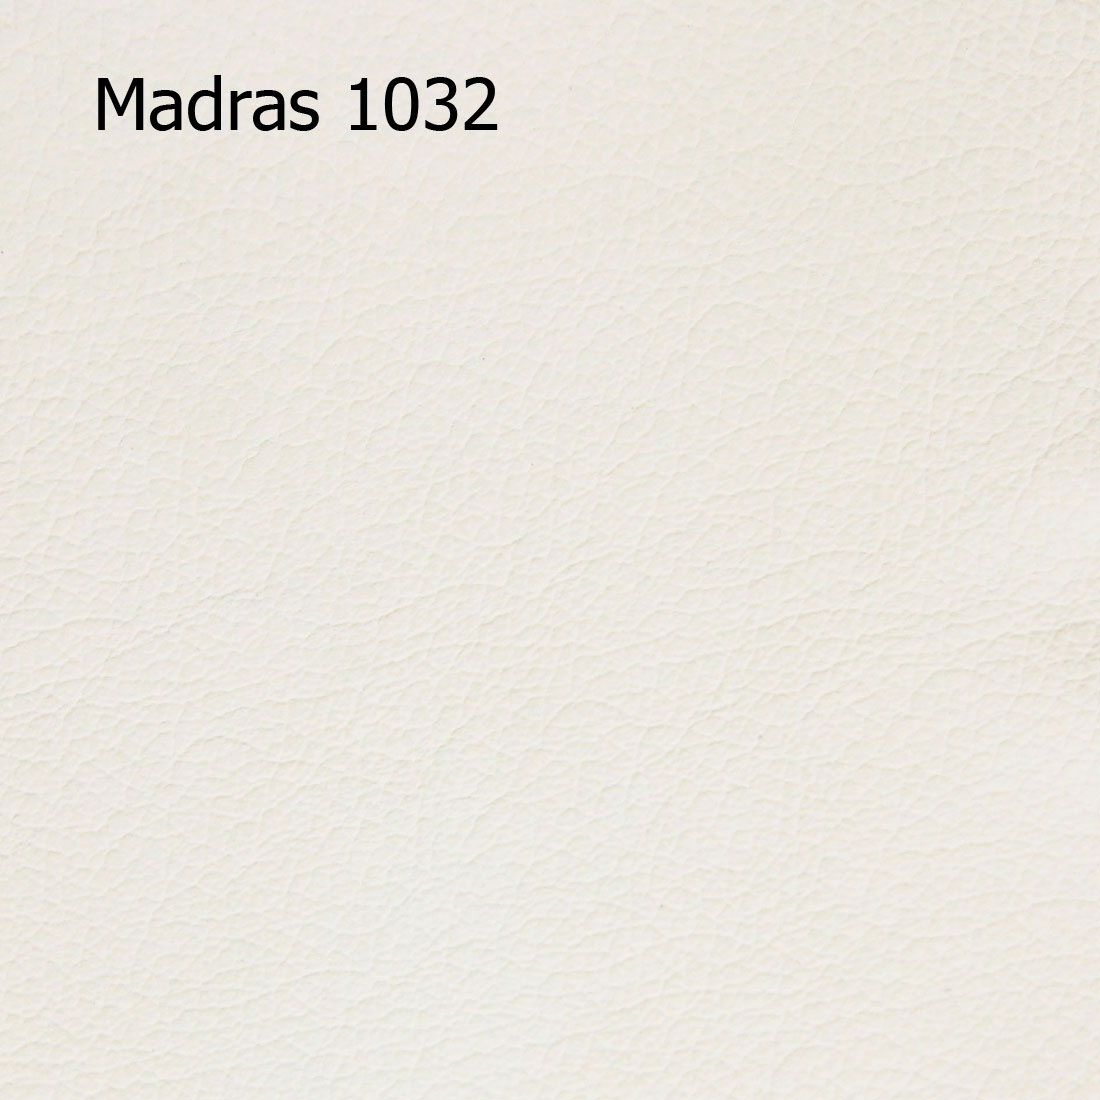 Madras 1032